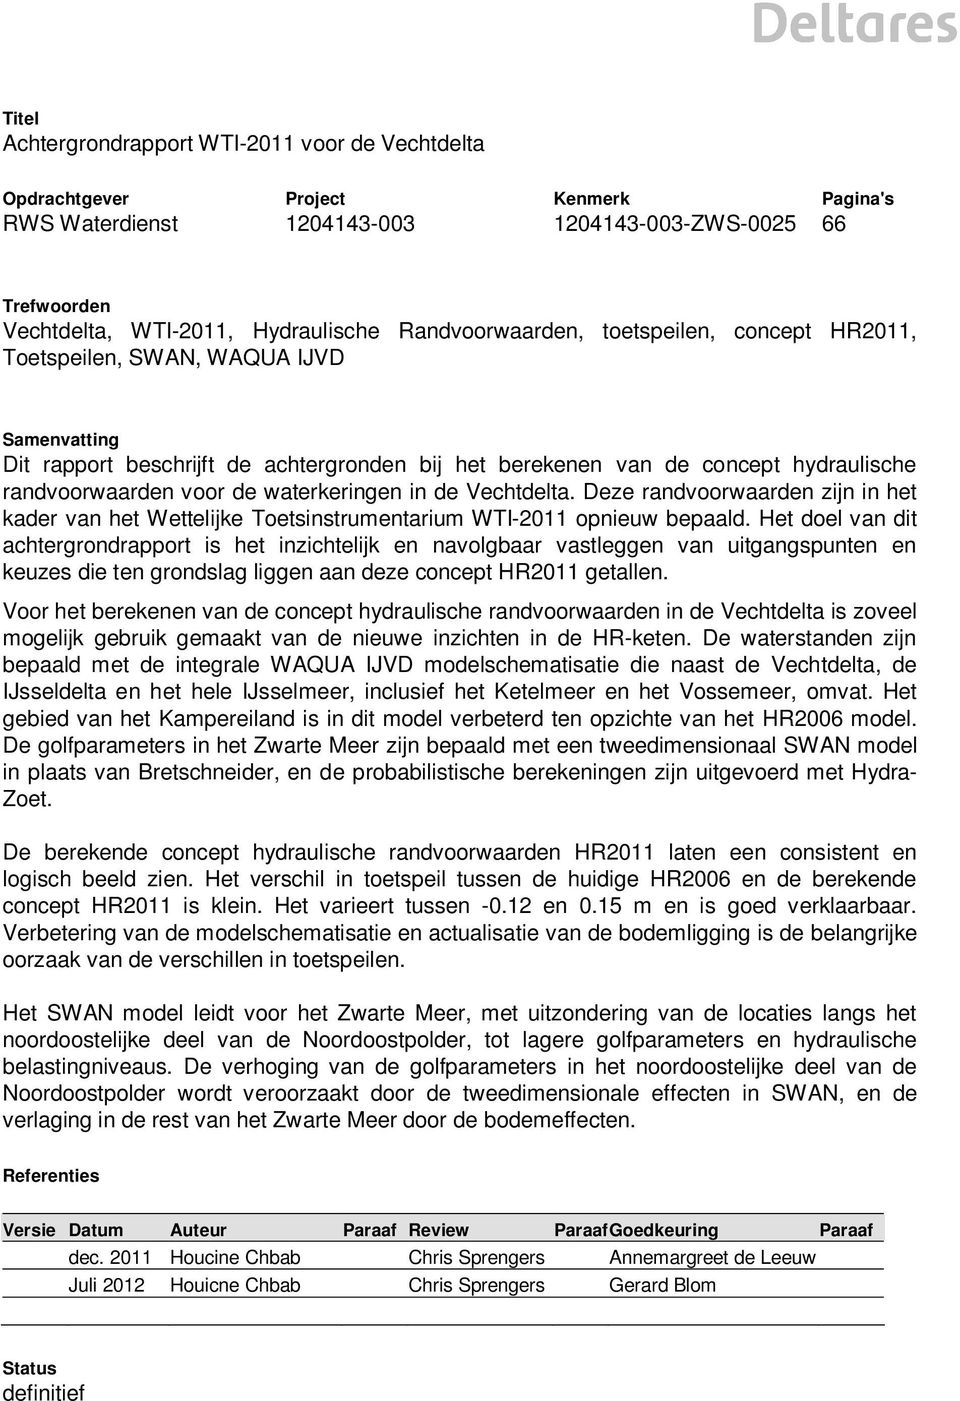 waterkeringen in de Vechtdelta. Deze randvoorwaarden zijn in het kader van het Wettelijke Toetsinstrumentarium WTI-2011 opnieuw bepaald.